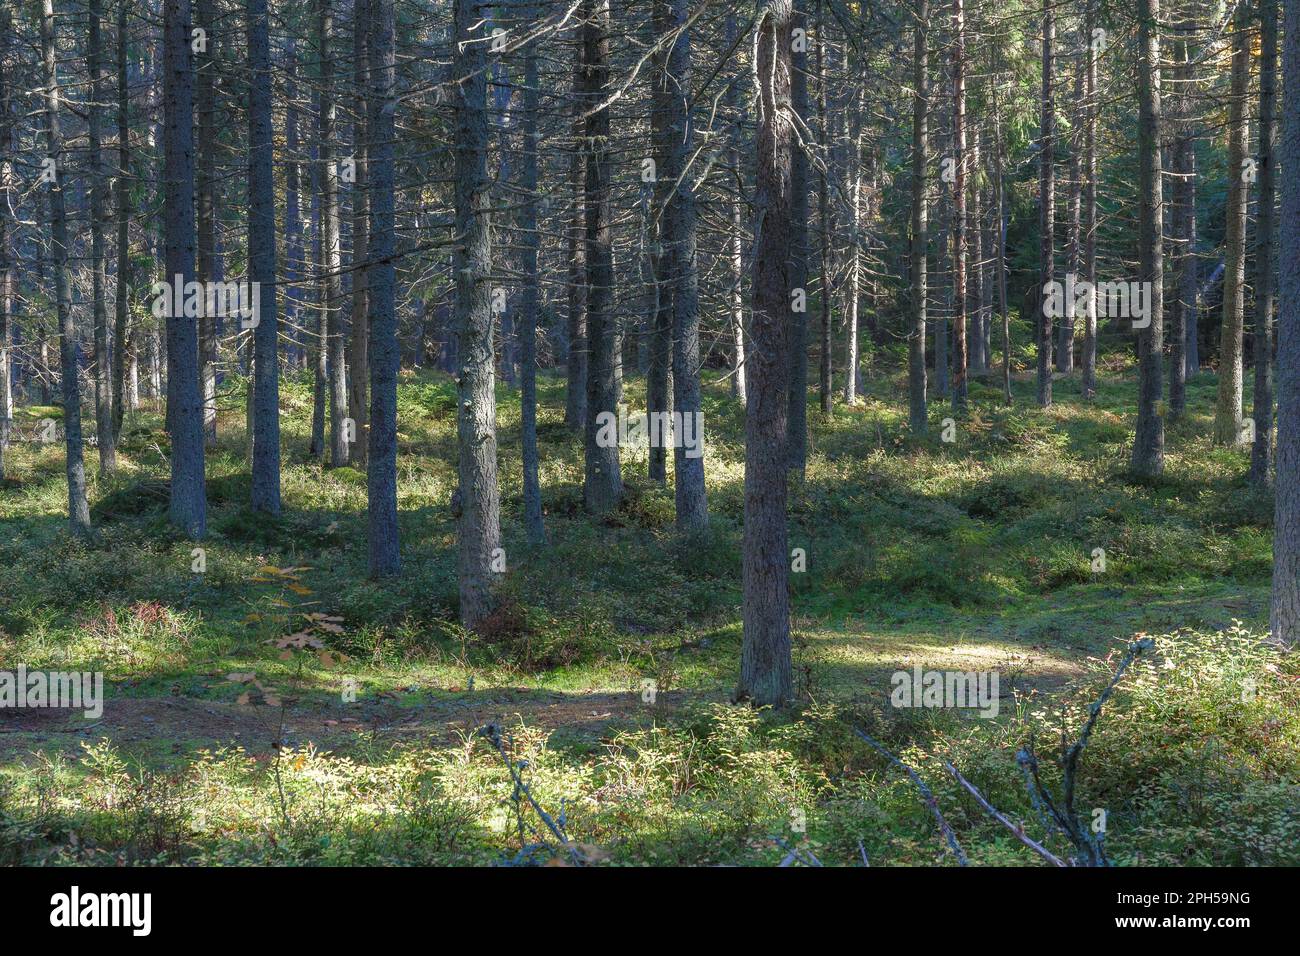 Foresta sempreverde illuminata dal sole. Fondo muschio, tronchi di conifere e rami. Foto Stock